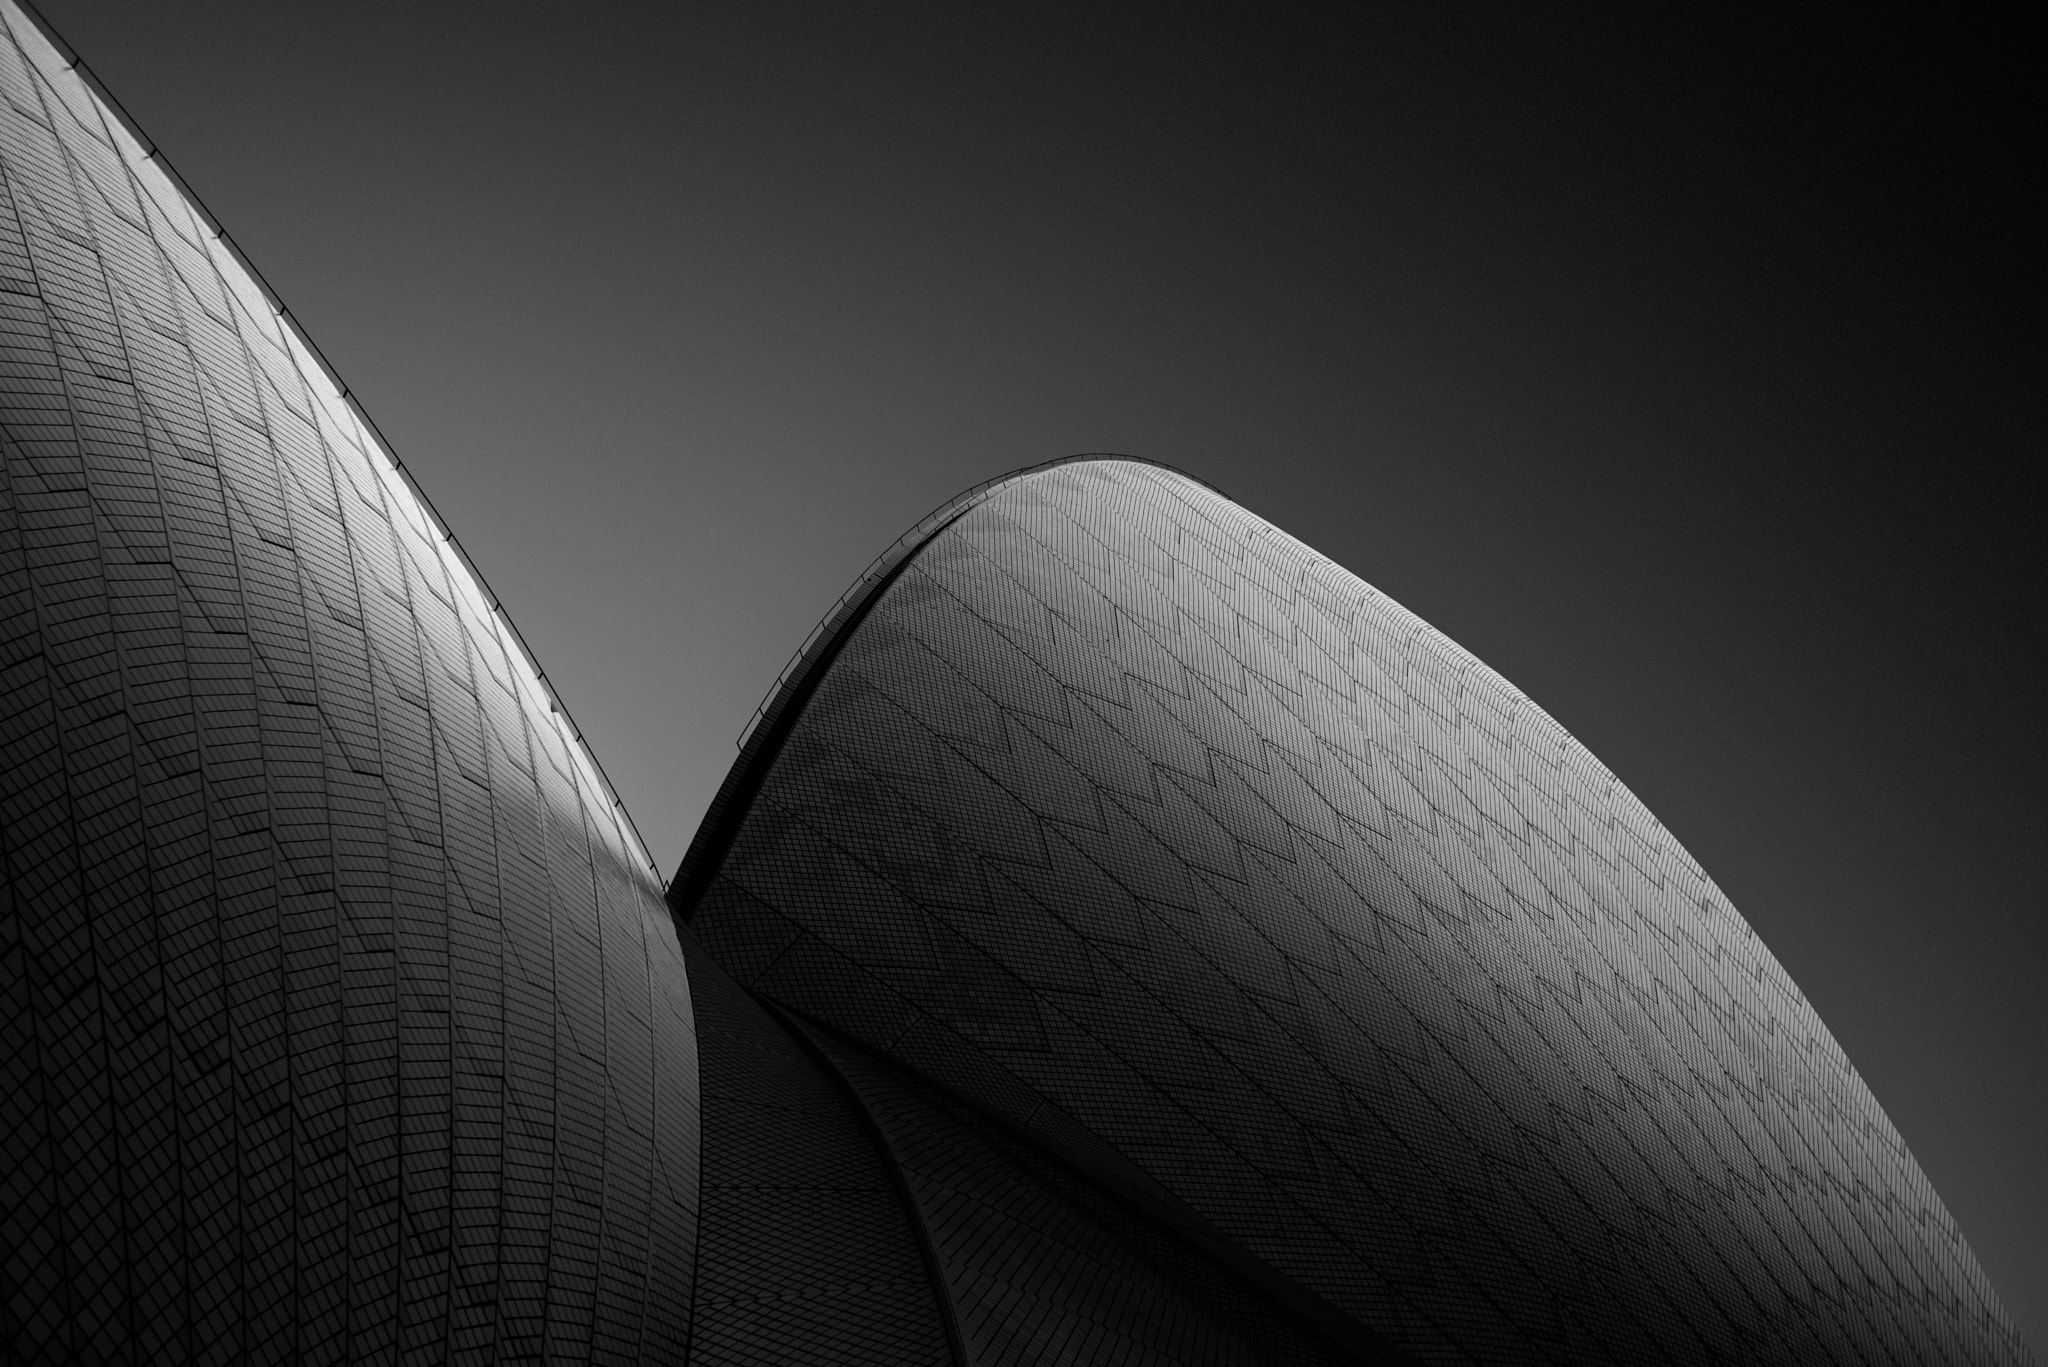 Nikon D750 + AF-S Zoom-Nikkor 24-85mm f/3.5-4.5G IF-ED sample photo. Sydney opera house photography